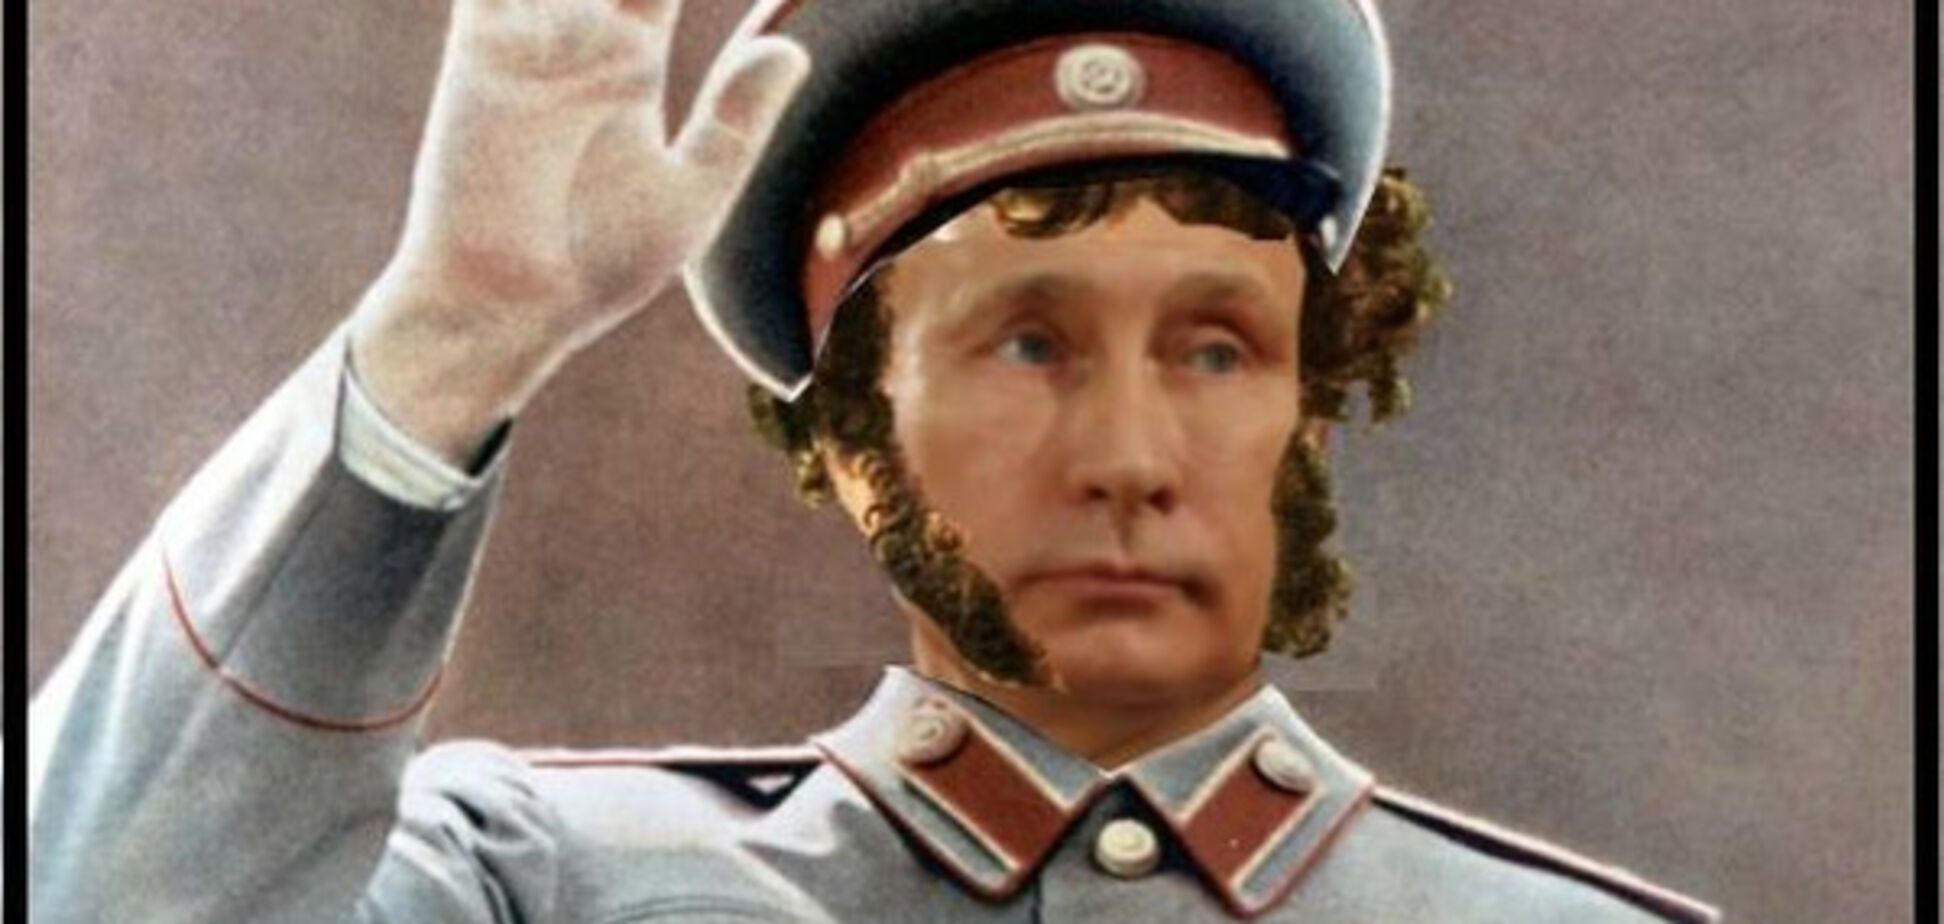 С бакенбардами и в медалях: в сети показали истинного идола россиян